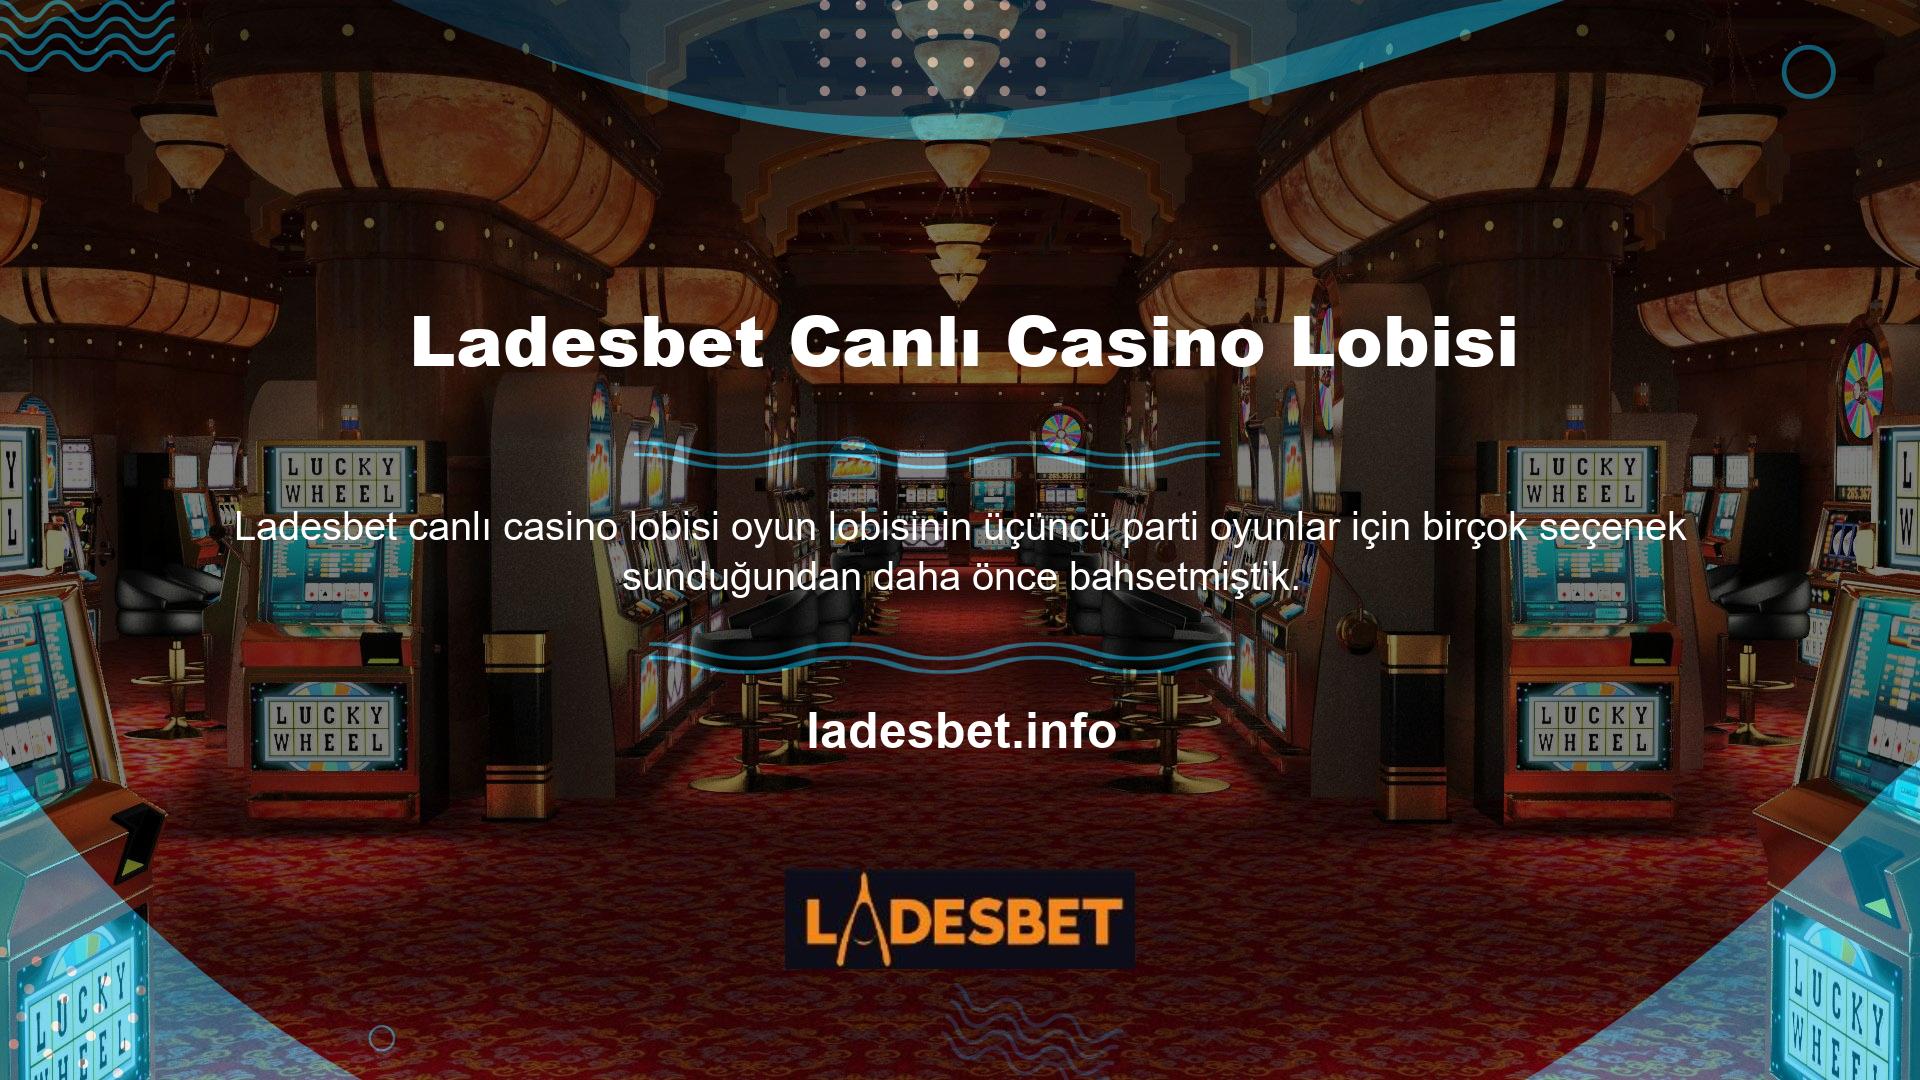 Ladesbet Canlı Casino lobisinde her üyenin bütçesine uygun ayrı masalar bulunmaktadır